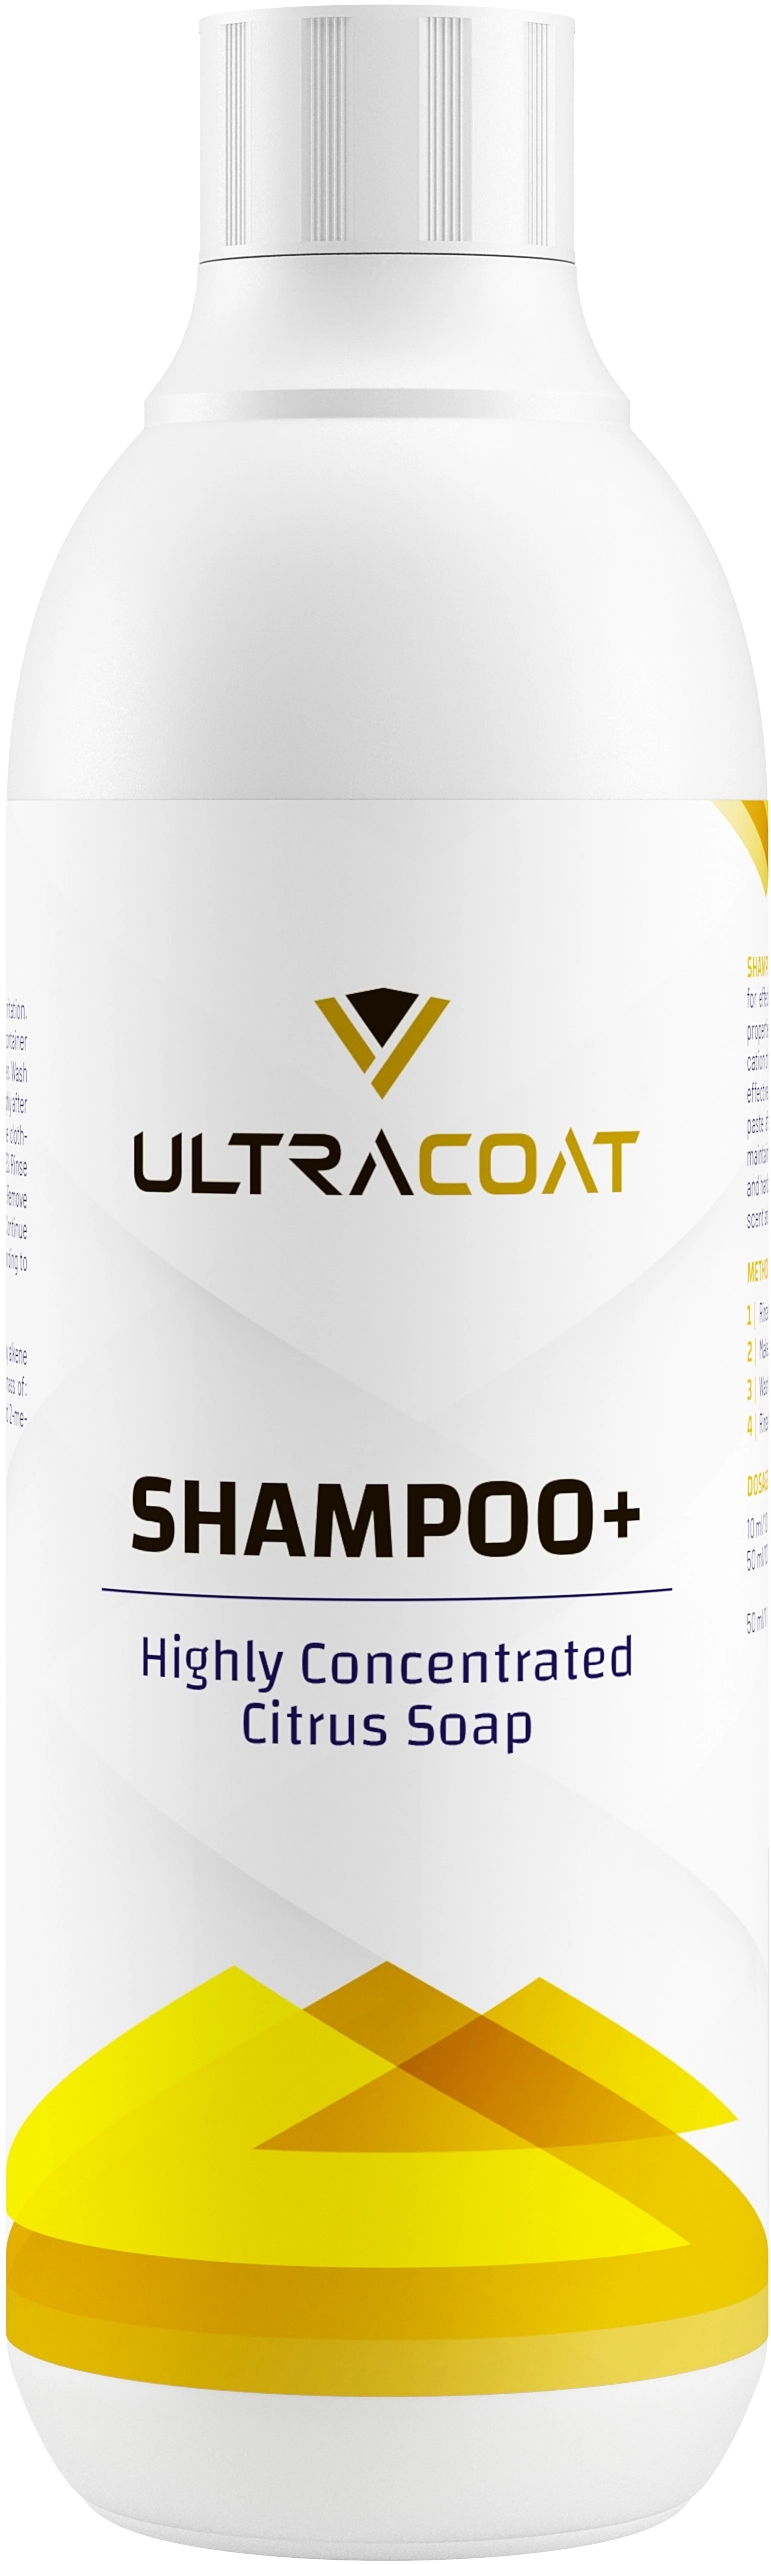 Image of Ultracoat Shampoo+ - wysoce skoncentrowany szampon, odtłuszcza lakier 500ml